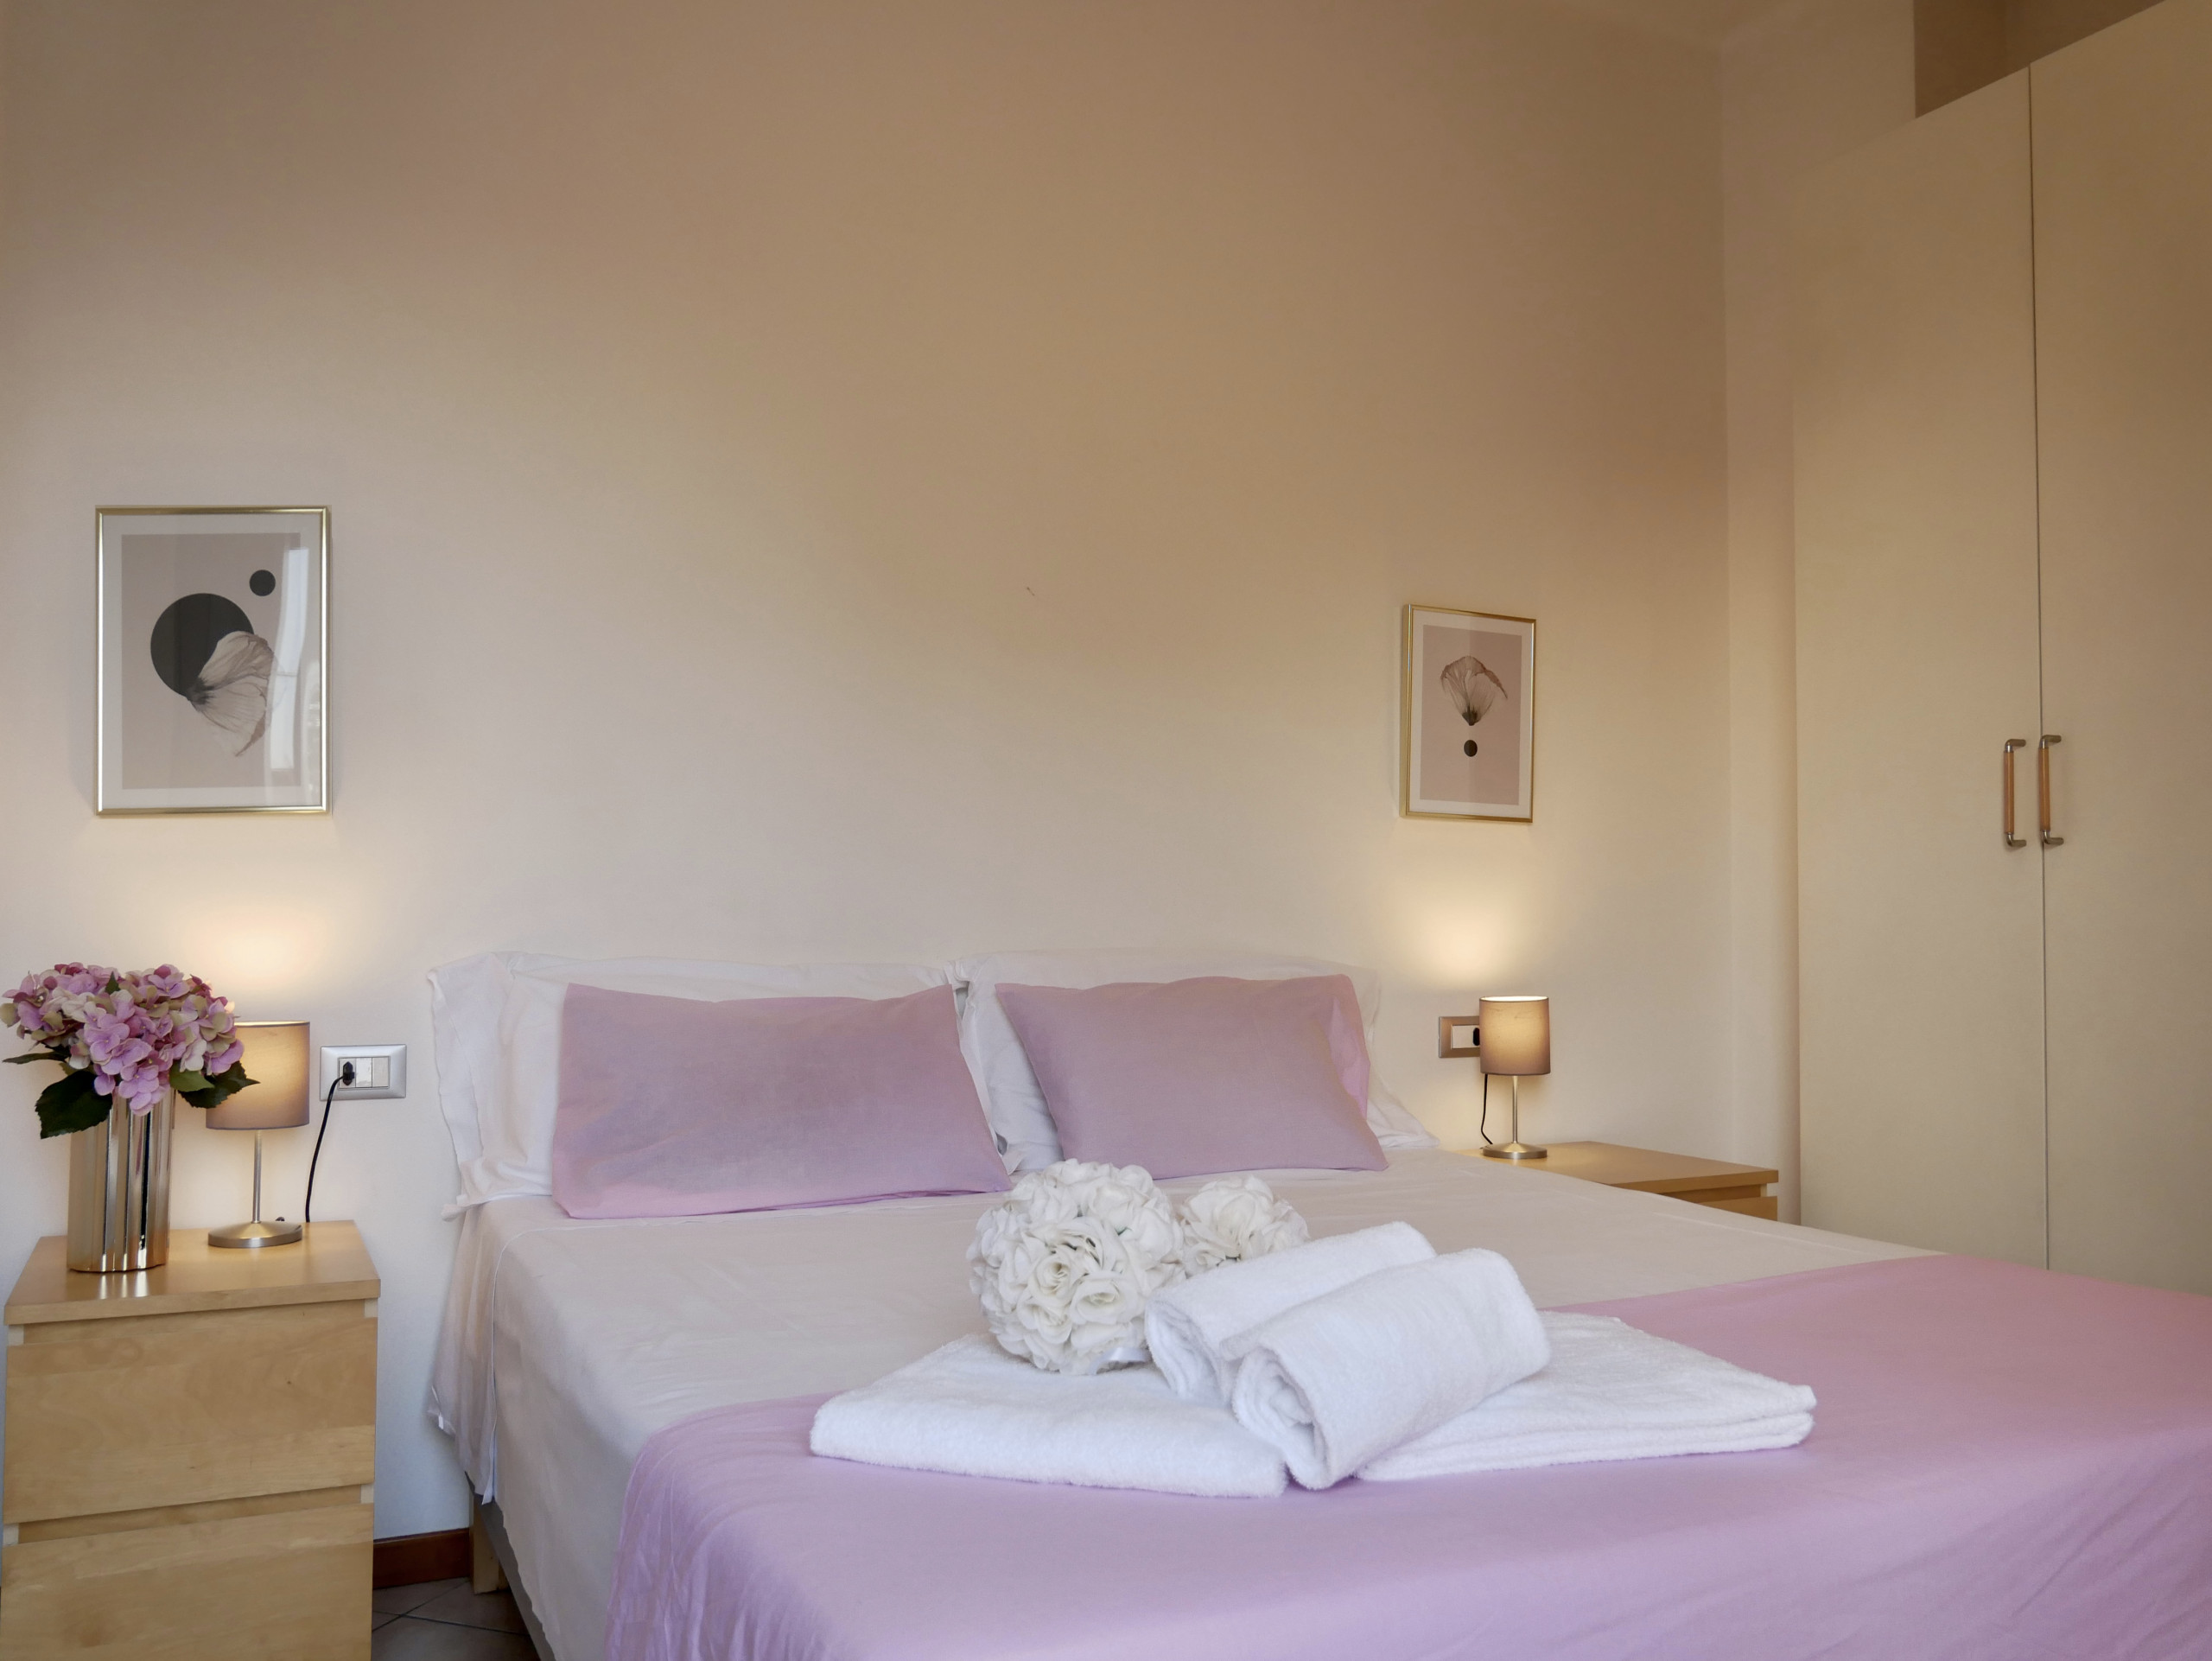  a Bergamo - Diadema Pink - Immobili e Soluzioni Rent